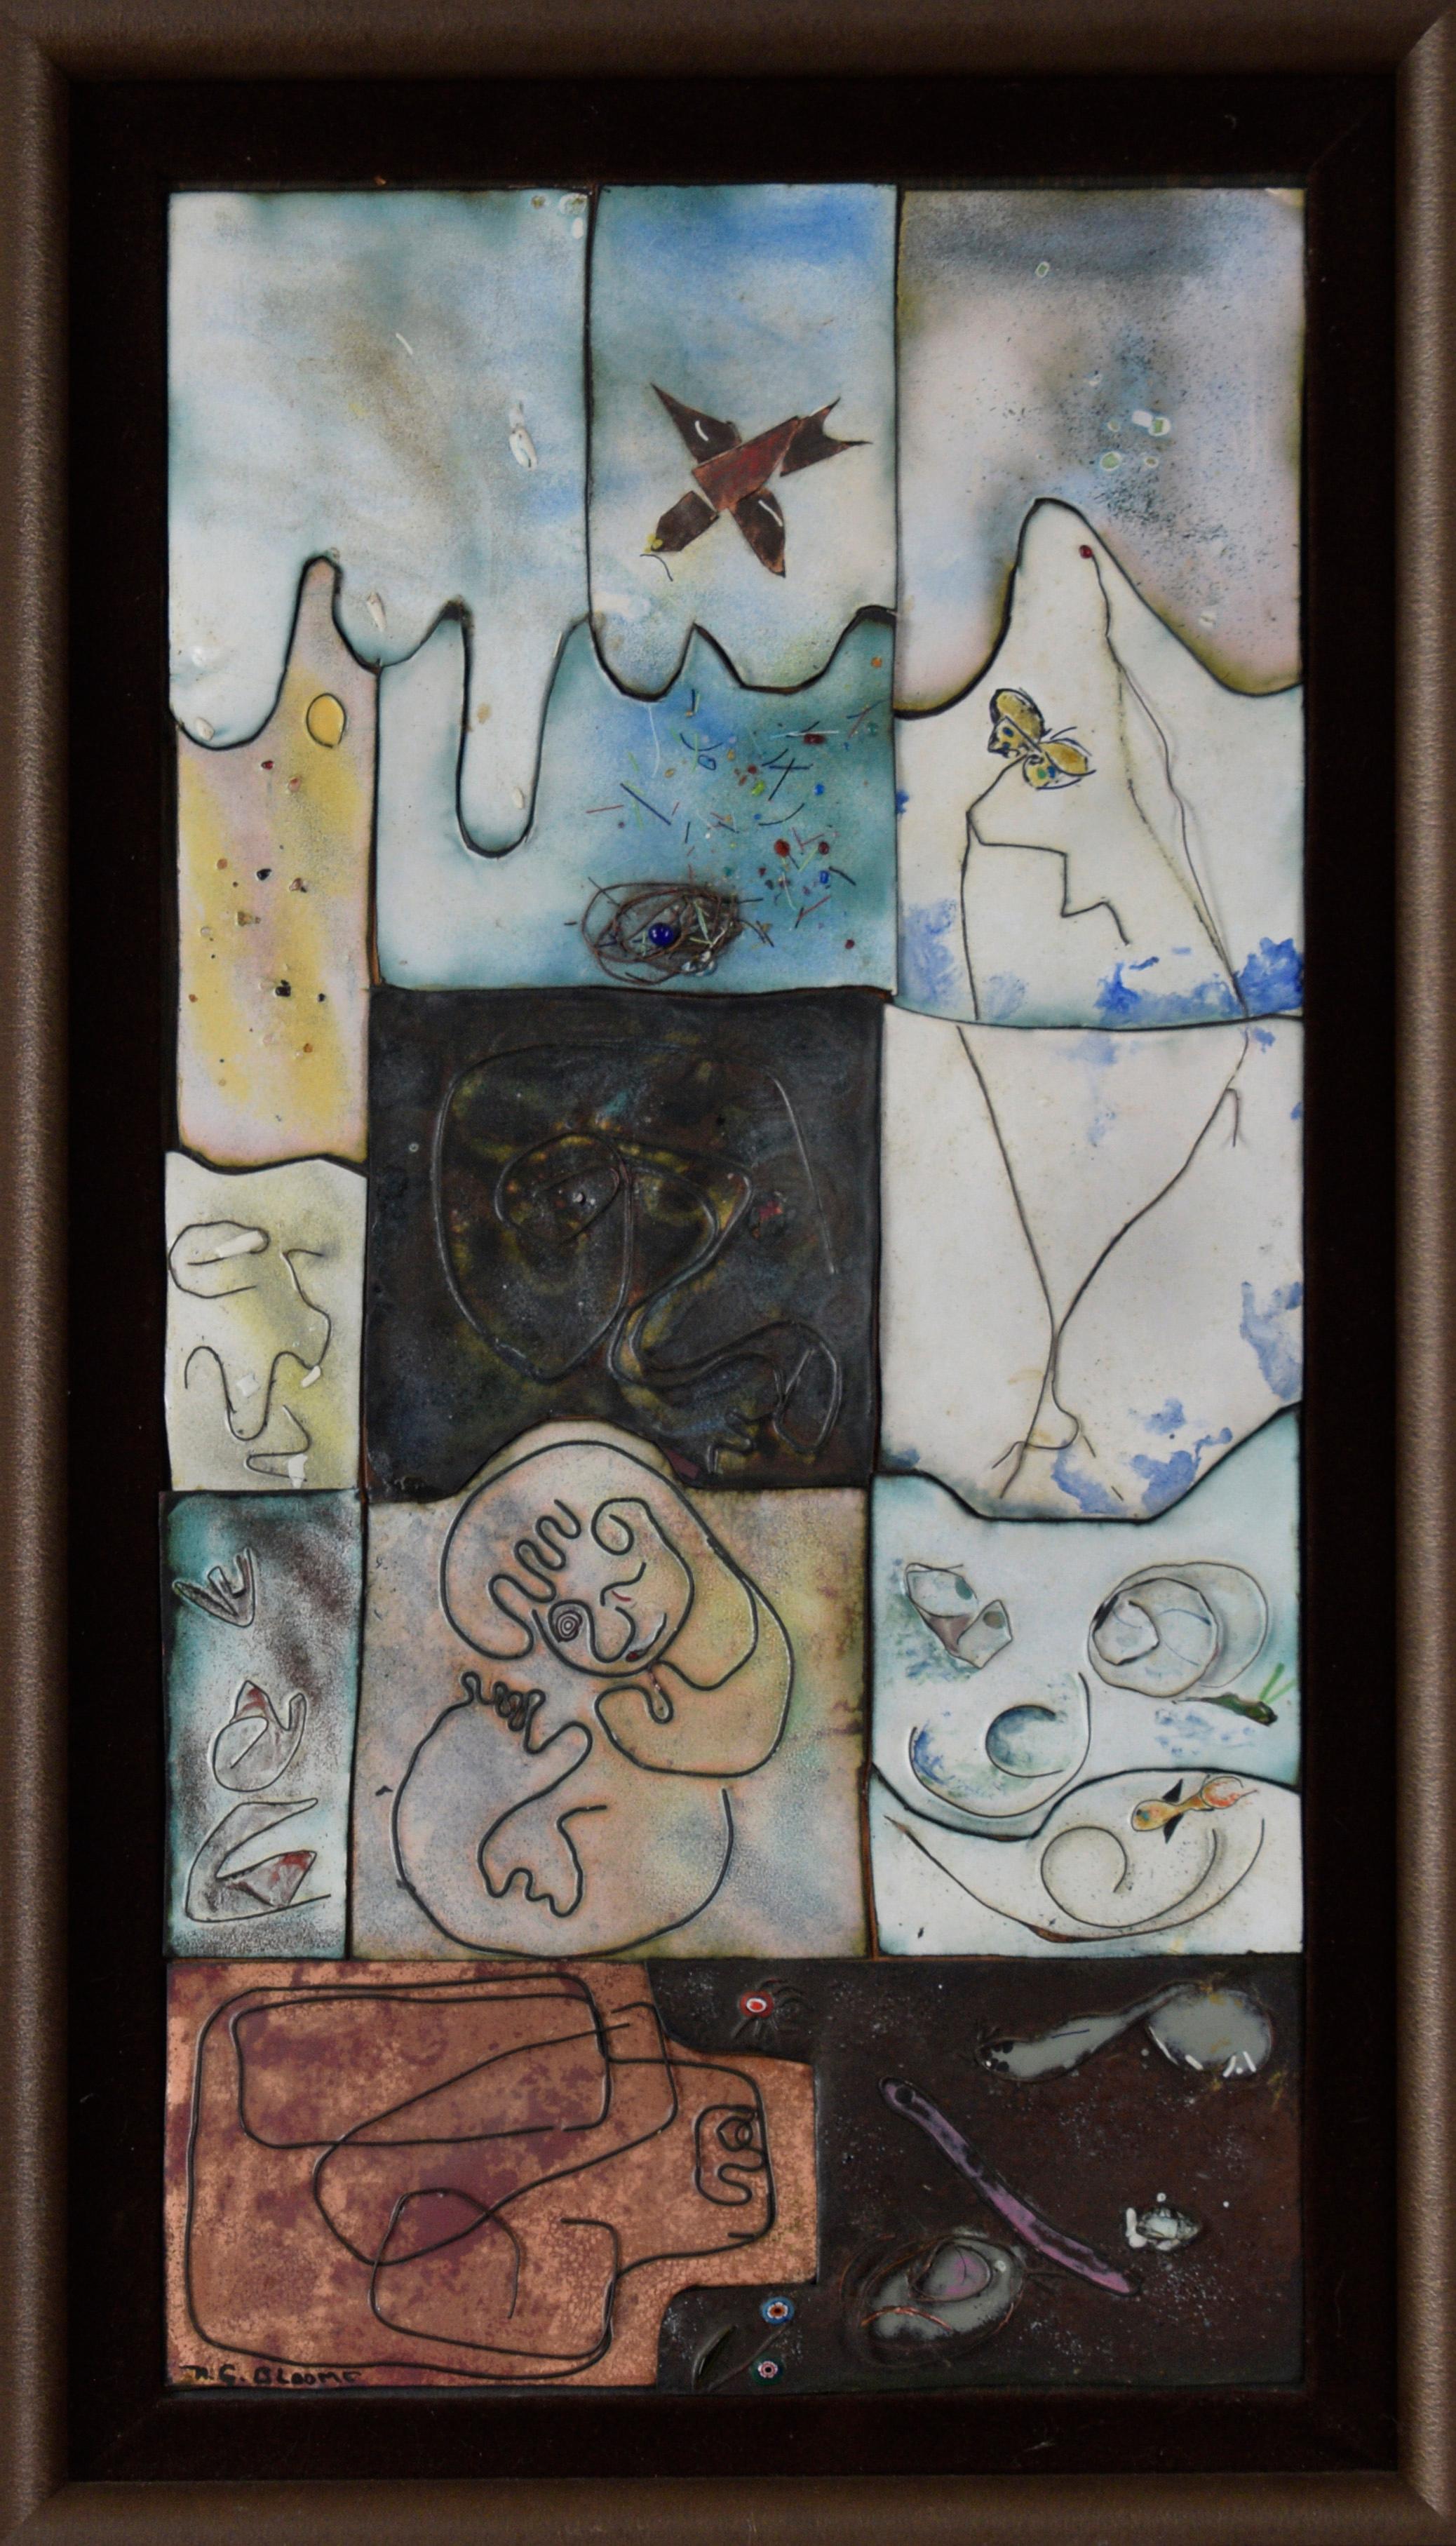 Tiles émaillés en cuivre aux multiples facettes, abstrait de N.G. Bloome
Panneaux en cuivre émaillé "Picasso" esq par un artiste inconnu. N.G. Bloome (A.I.C.). 
Pièce unique d'expressionnisme abstrait à multiples facettes représentant des carreaux